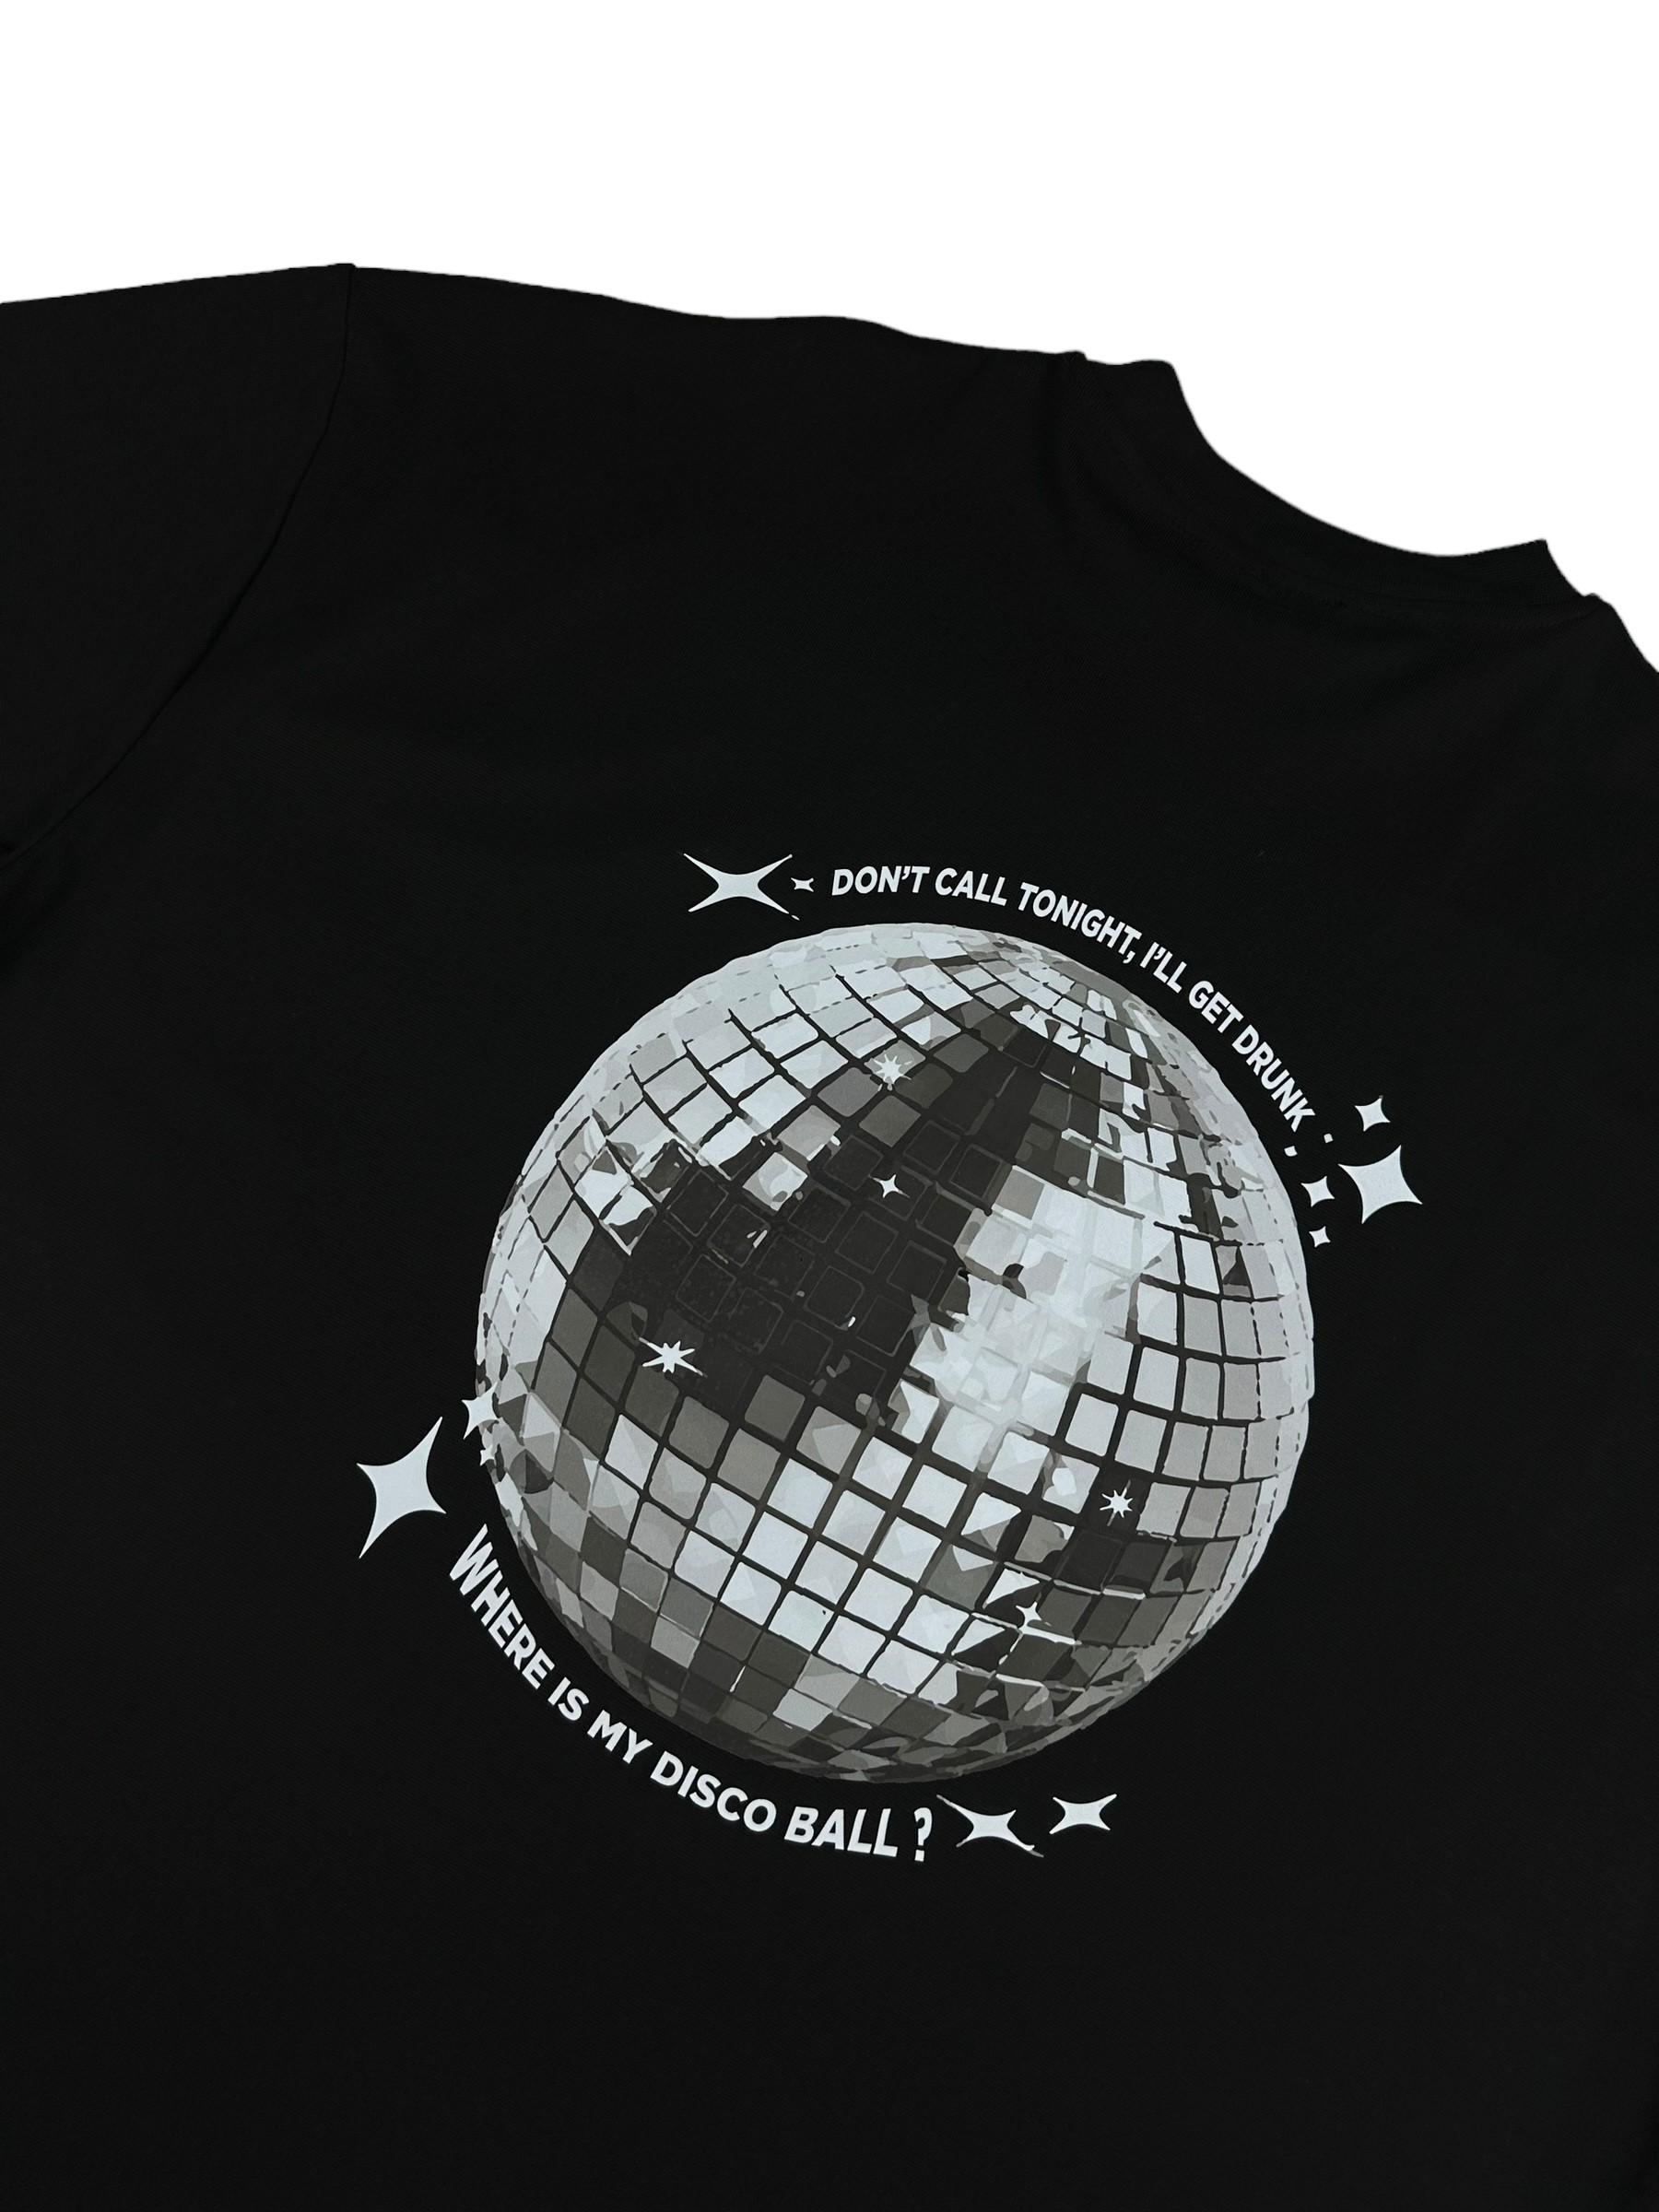 Disco Ball Oversize T Shirt (LMT84)